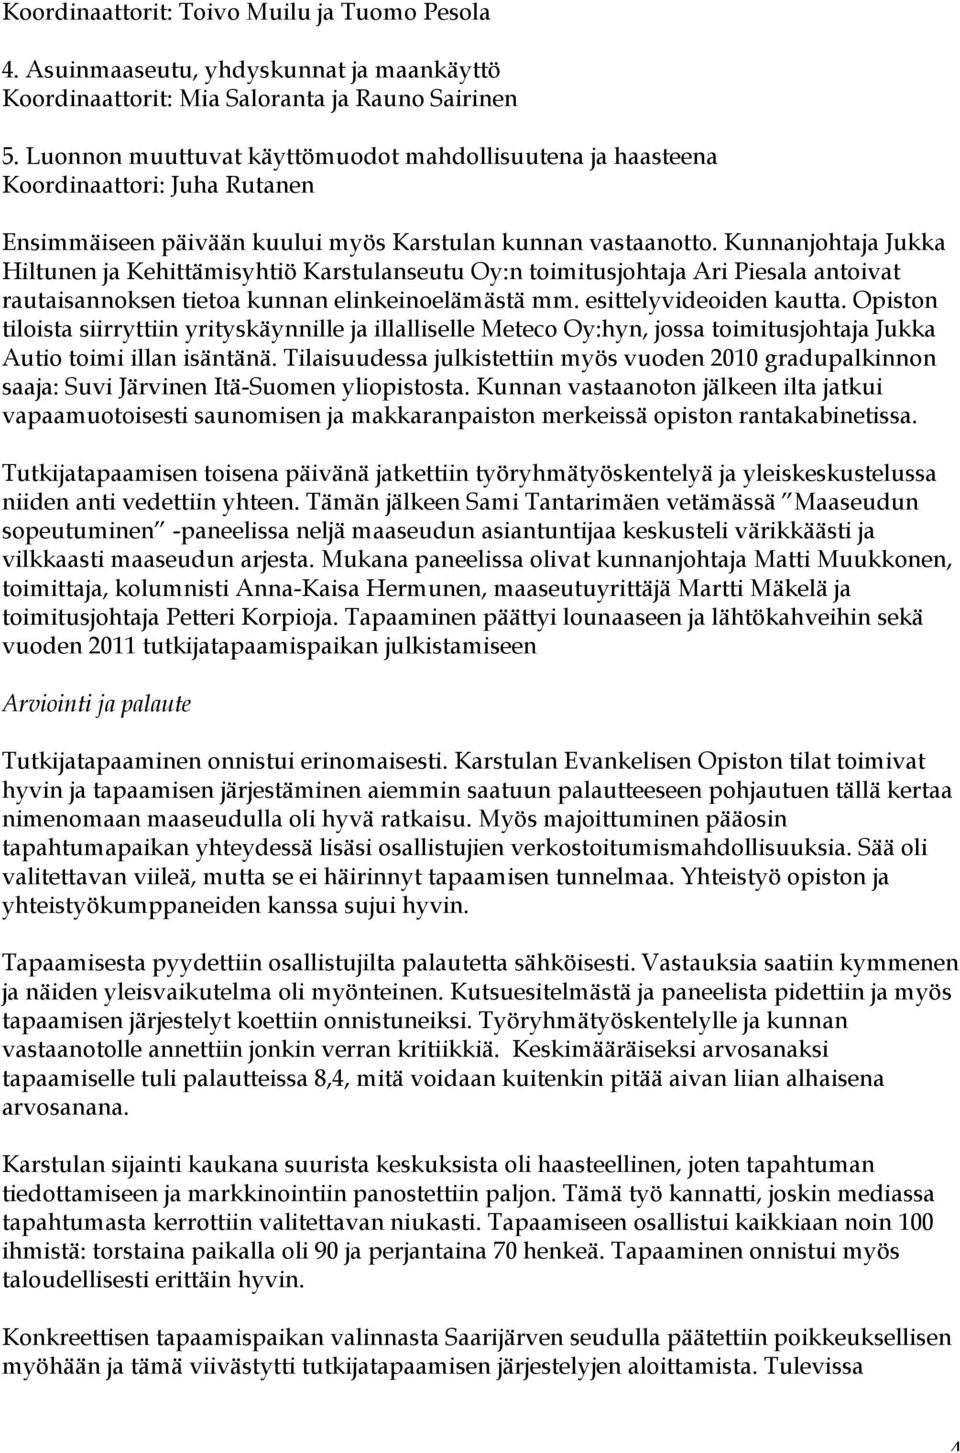 Kunnanjohtaja Jukka Hiltunen ja Kehittämisyhtiö Karstulanseutu Oy:n toimitusjohtaja Ari Piesala antoivat rautaisannoksen tietoa kunnan elinkeinoelämästä mm. esittelyvideoiden kautta.